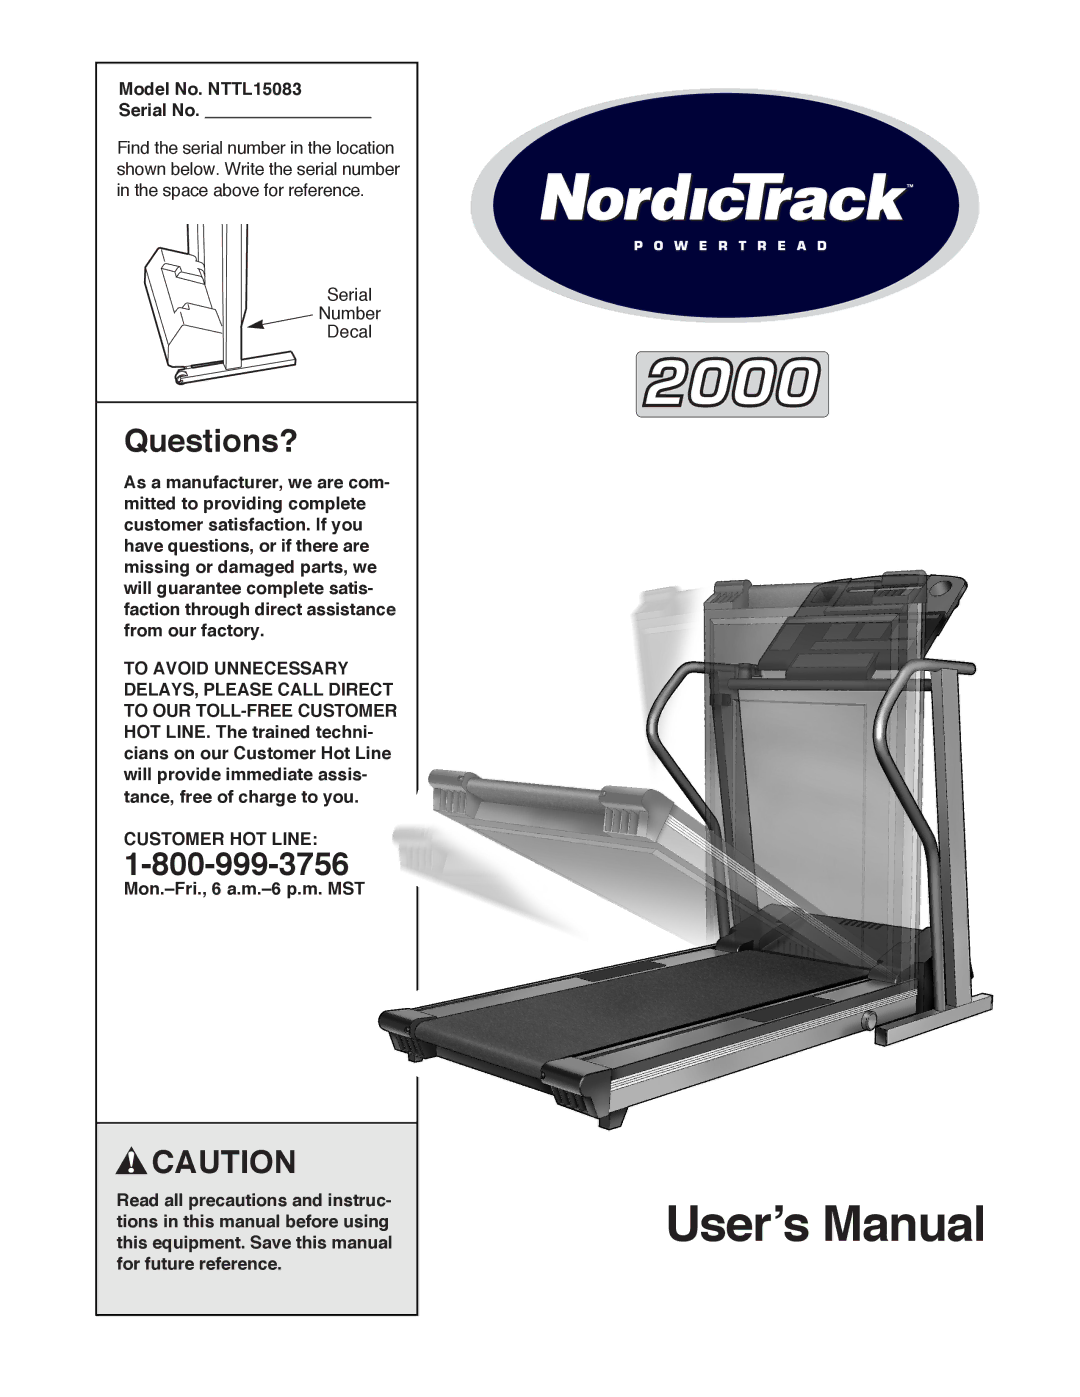 NordicTrack manual Questions?, Model No. NTTL15083 Serial No, Customer HOT Line 